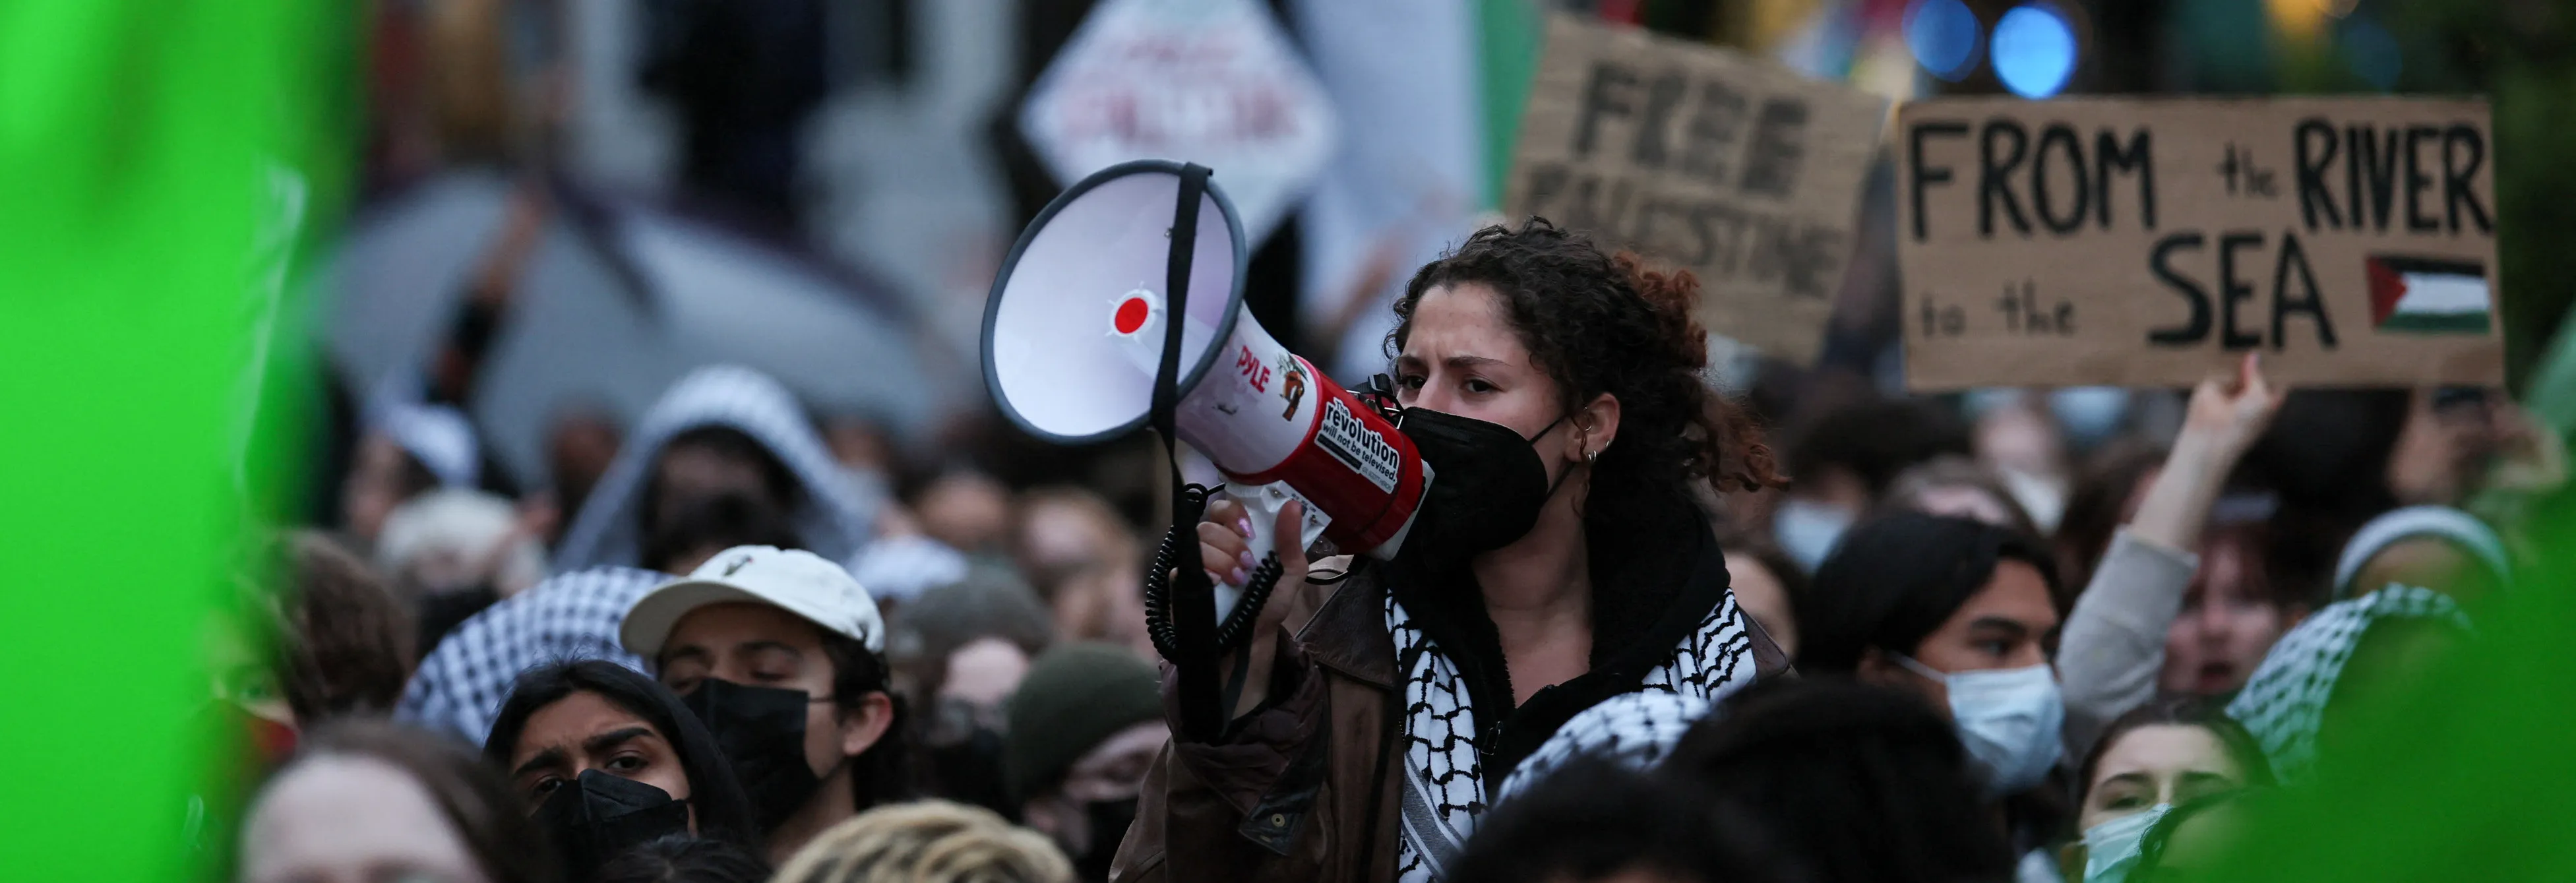 Univerzitami v USA zmítají propalestinské demonstrace. Zatčených je přes pět set